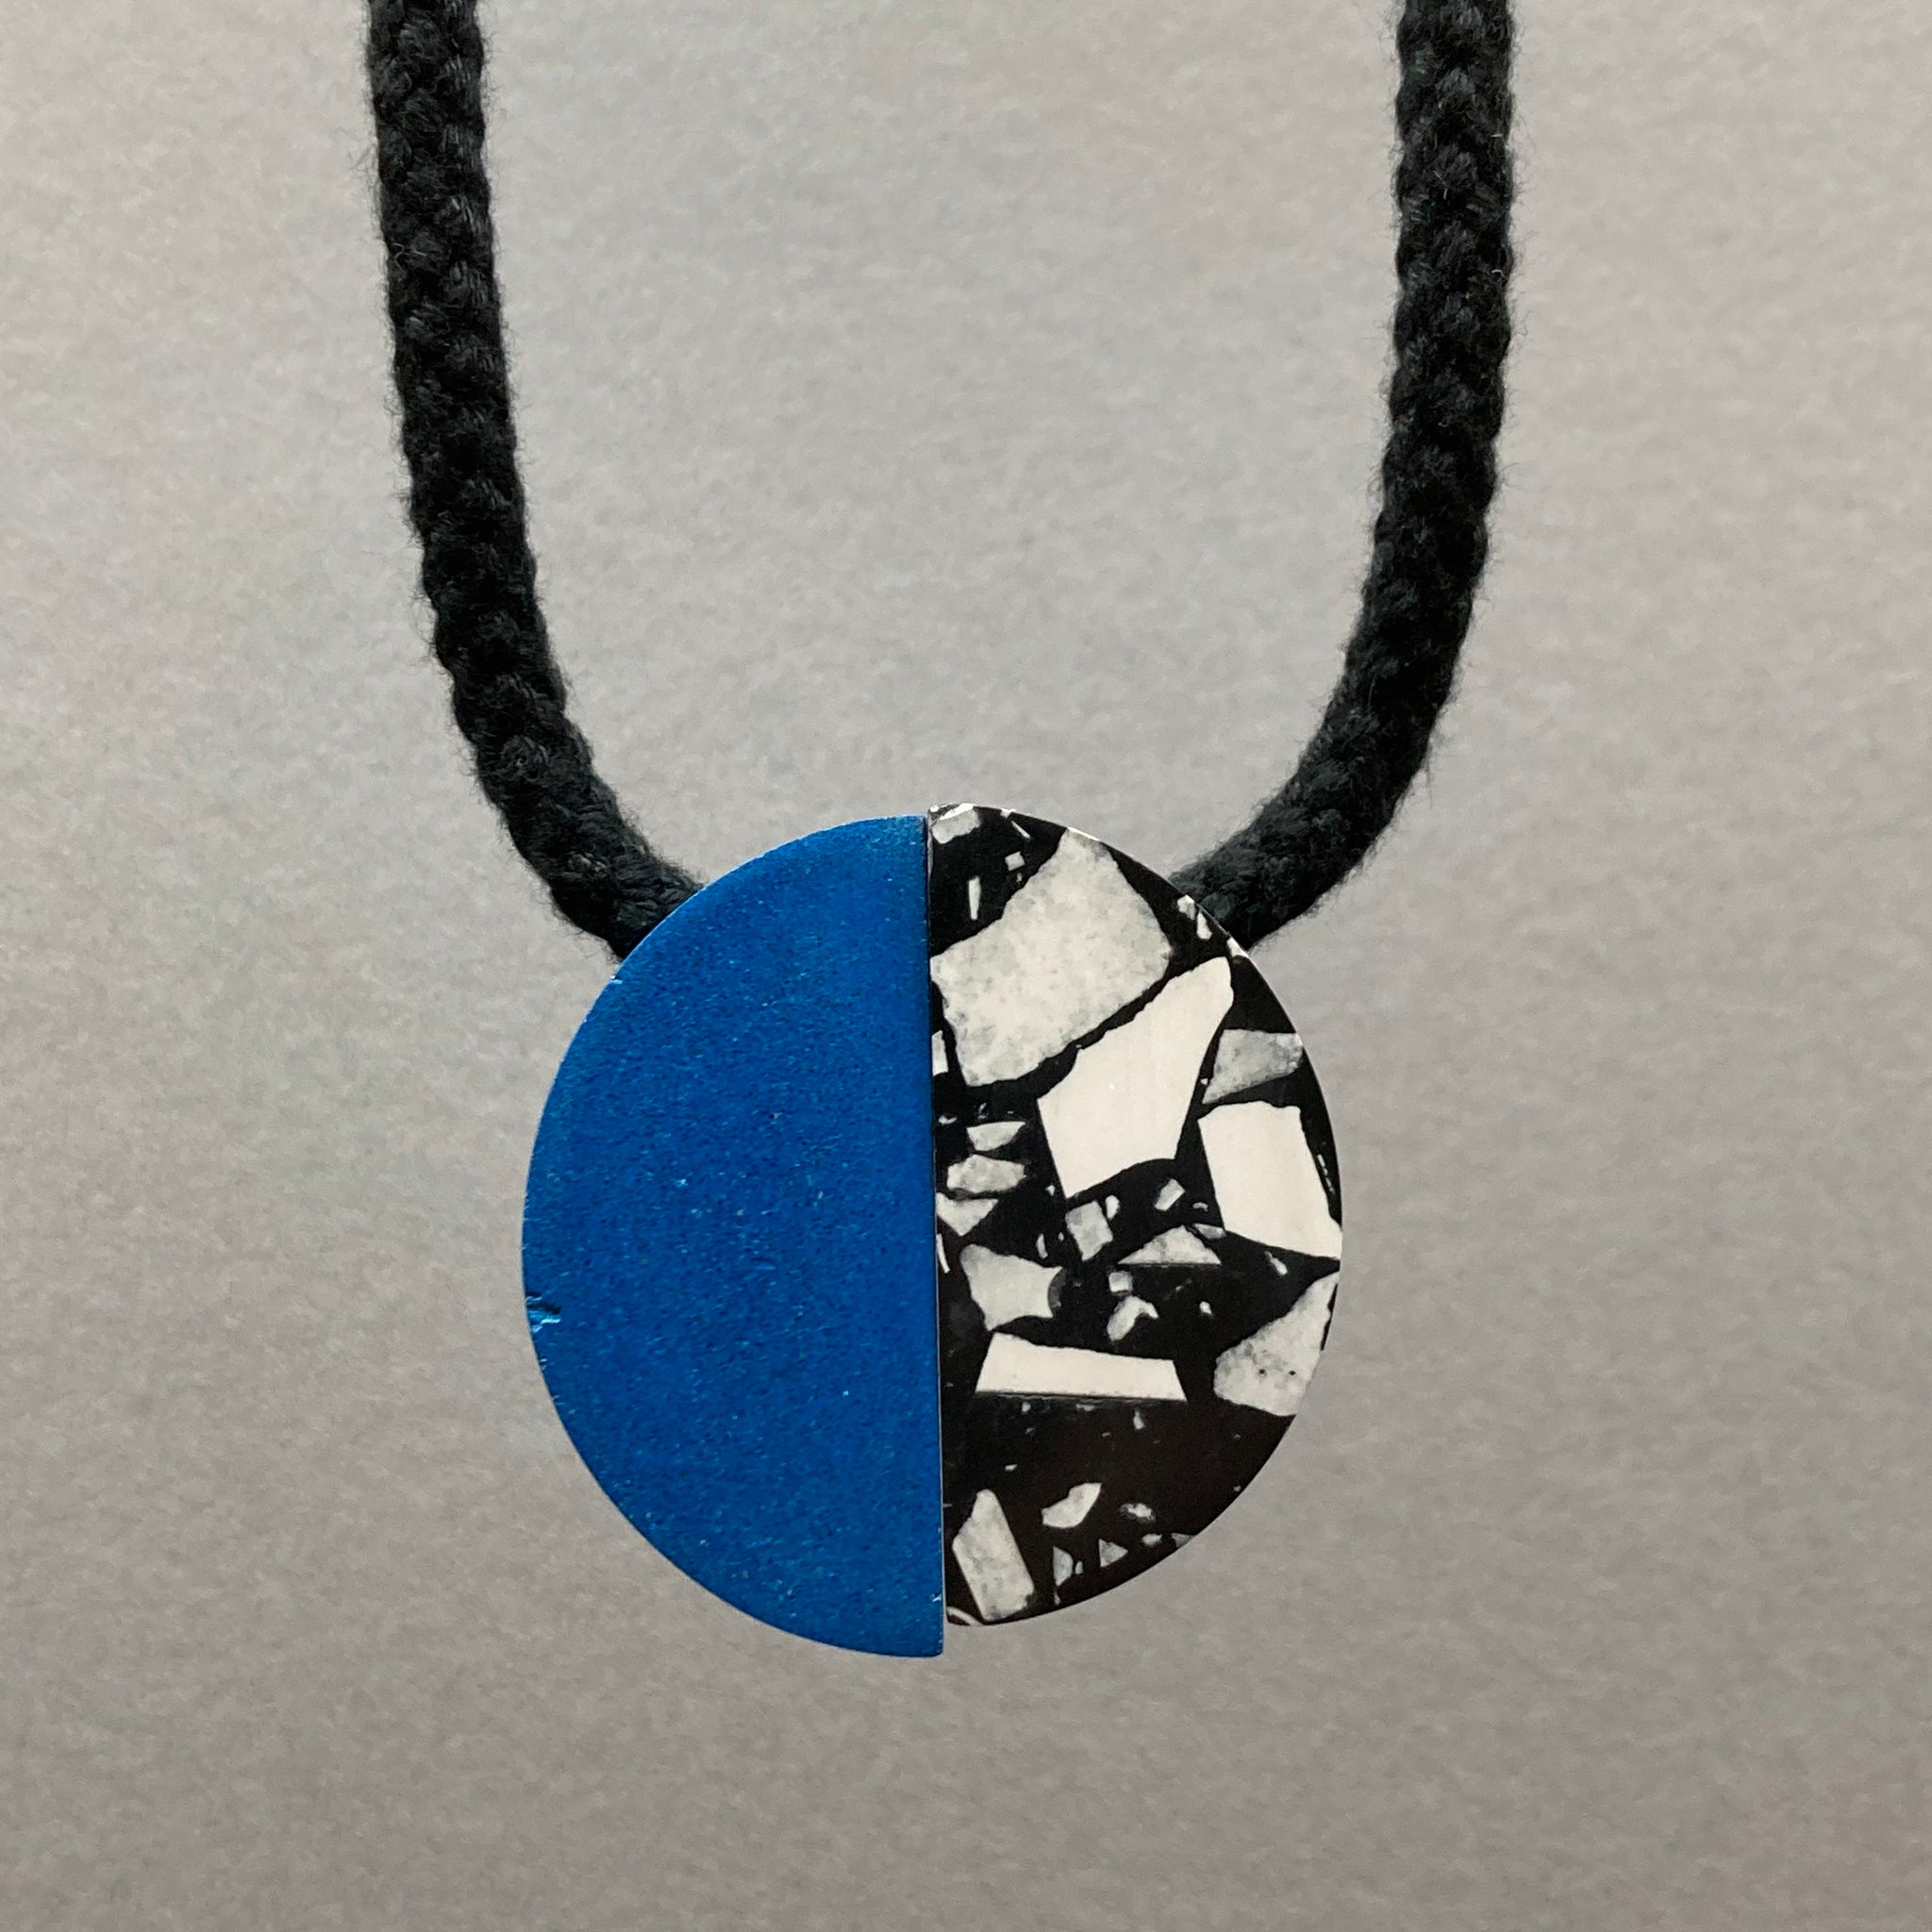 Sample blue/speckled necklace